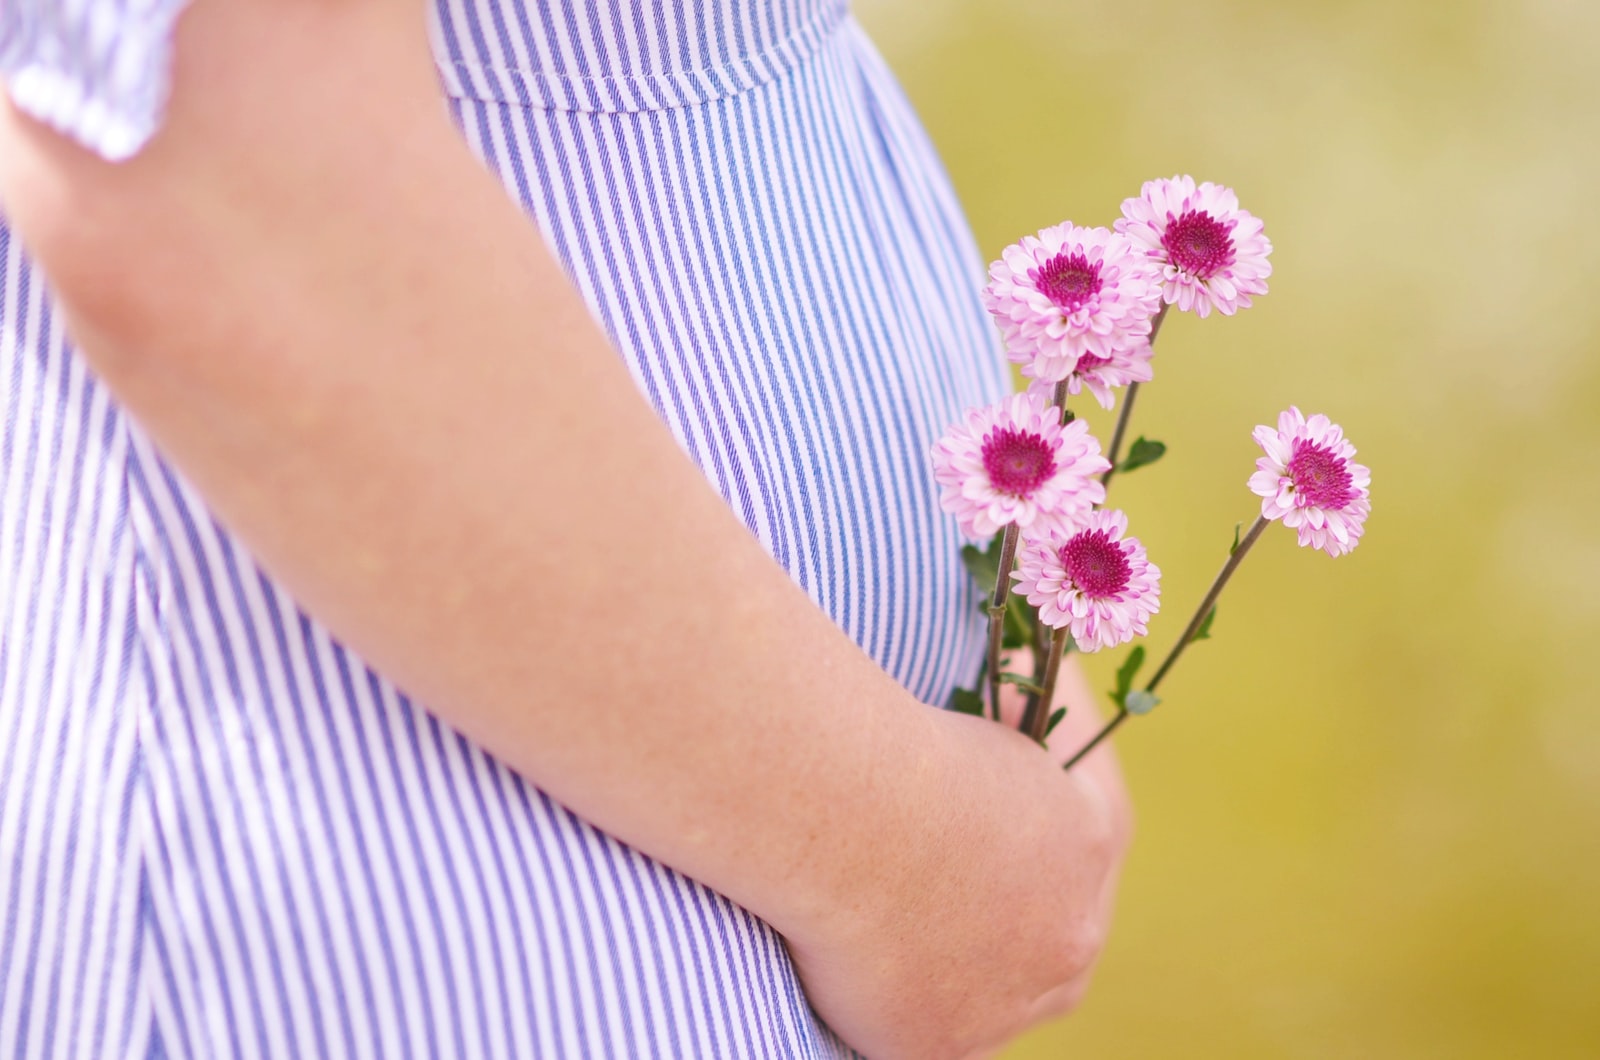 Hamilelikte Kilo Alımı ile İlgili Doğru Bilinen Yanlışlar